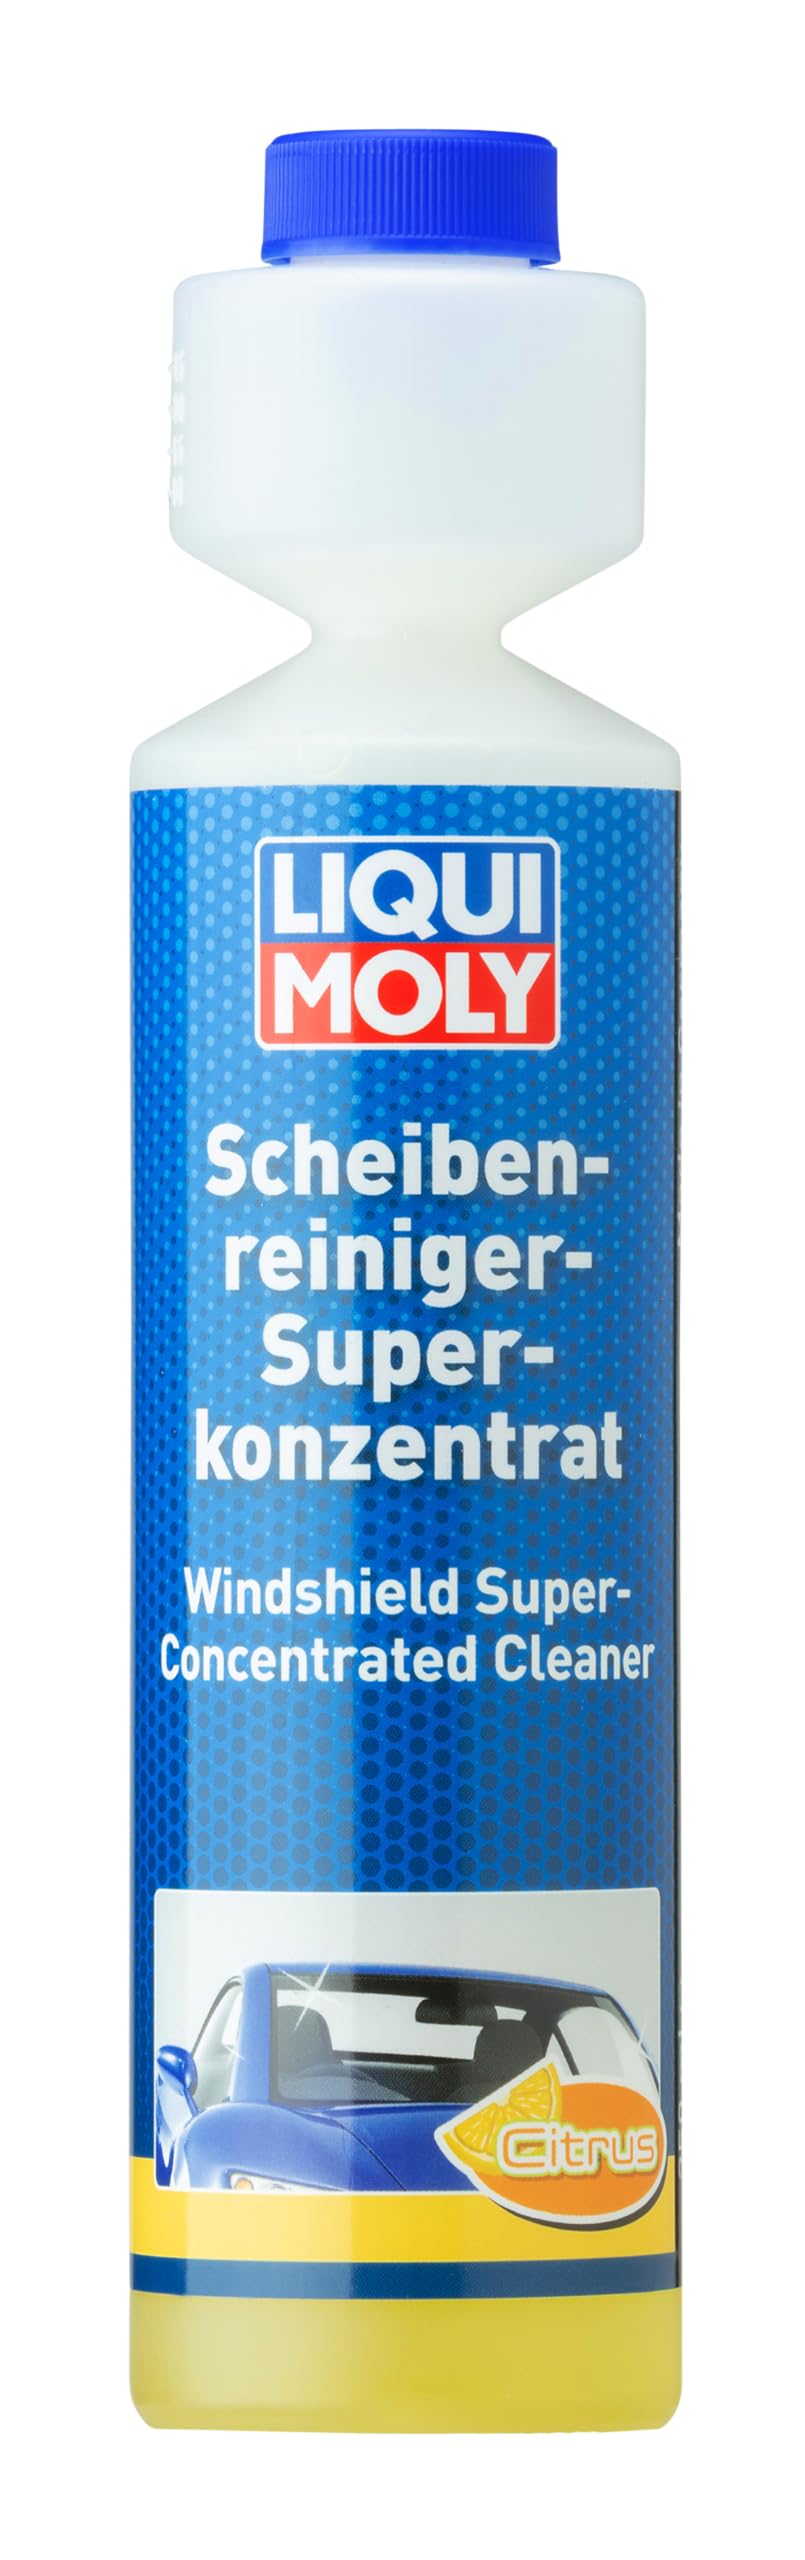 LIQUI MOLY Scheibenreiniger-Superkonzentrat Citrus | 250 ml | Wischwasserzusatz | Art.-Nr.: 1519 von Liqui Moly